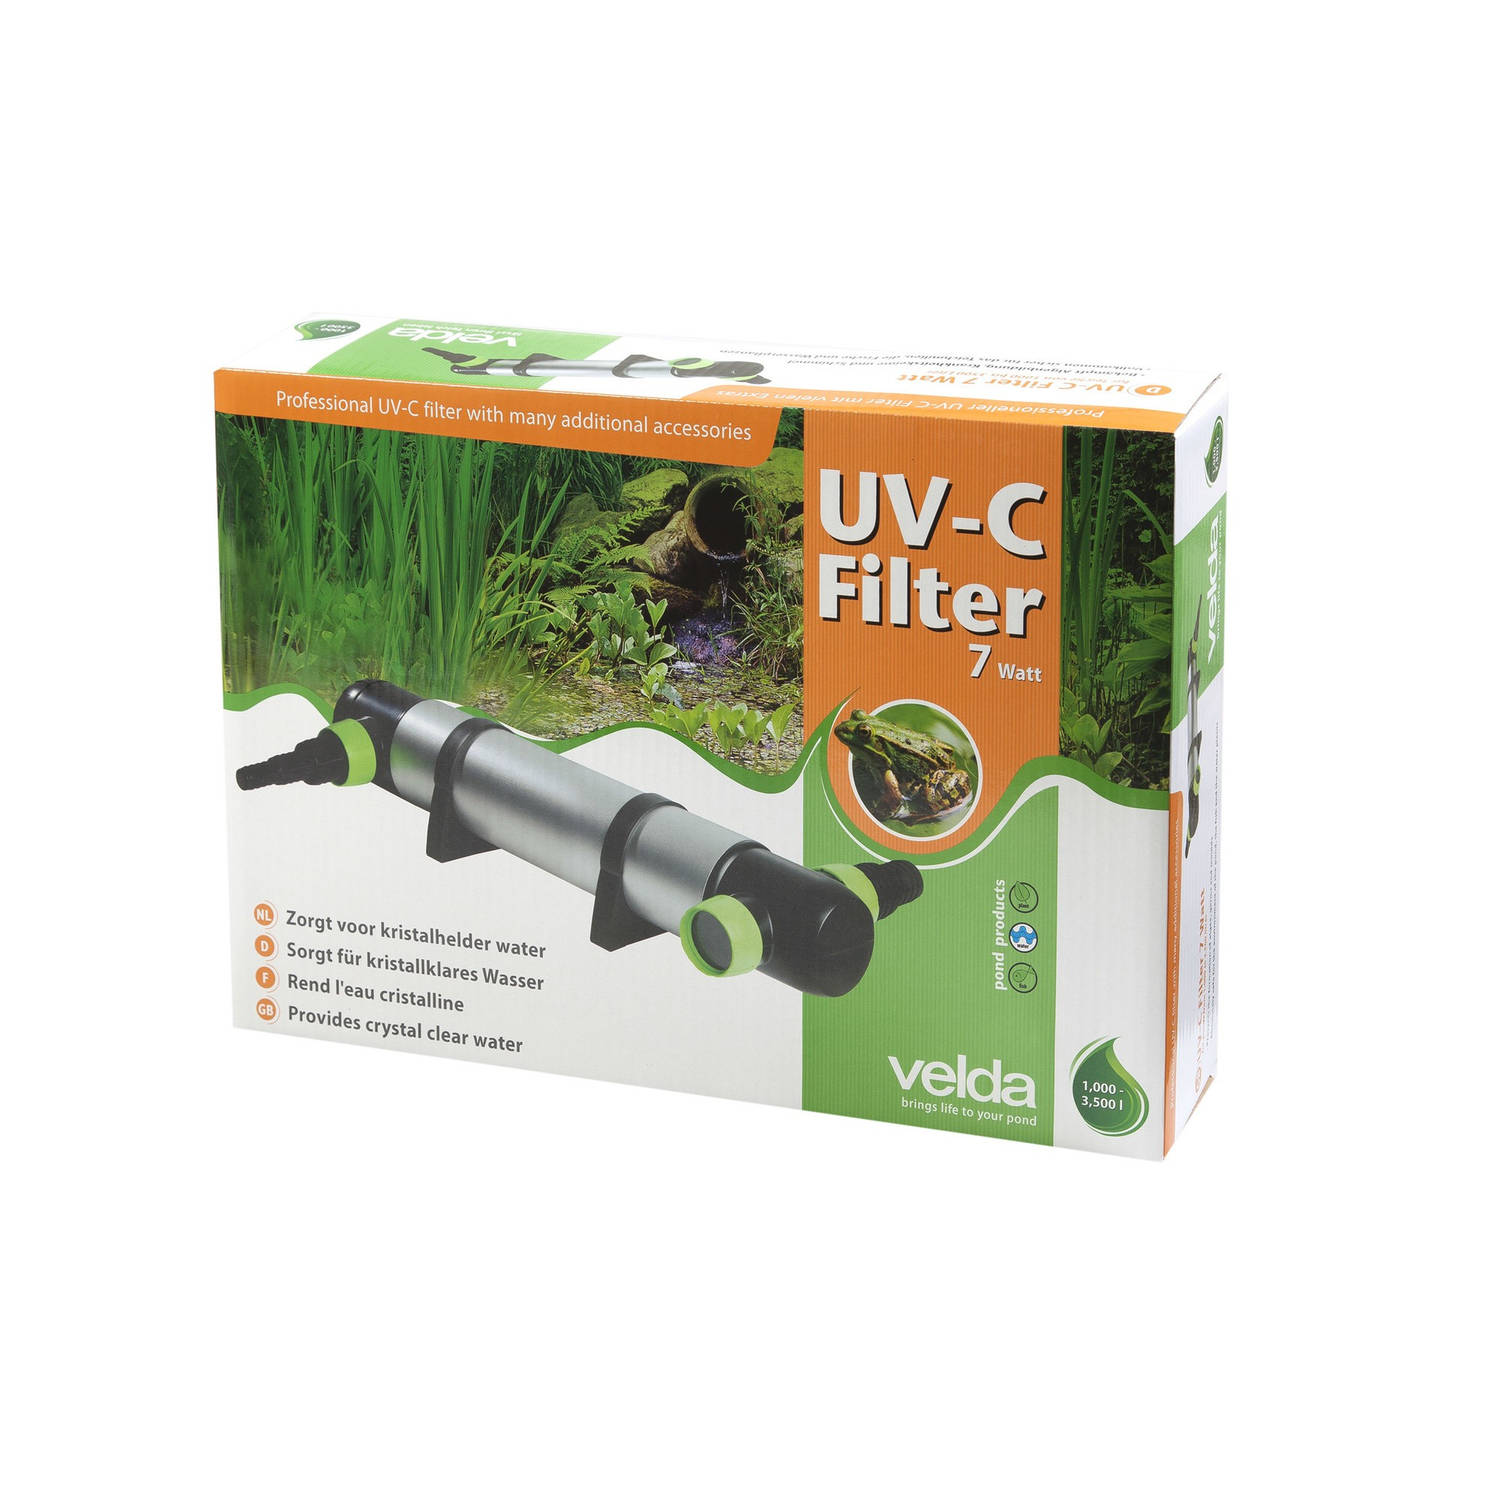 Velda - UV-C Filter Professional 7 Watt